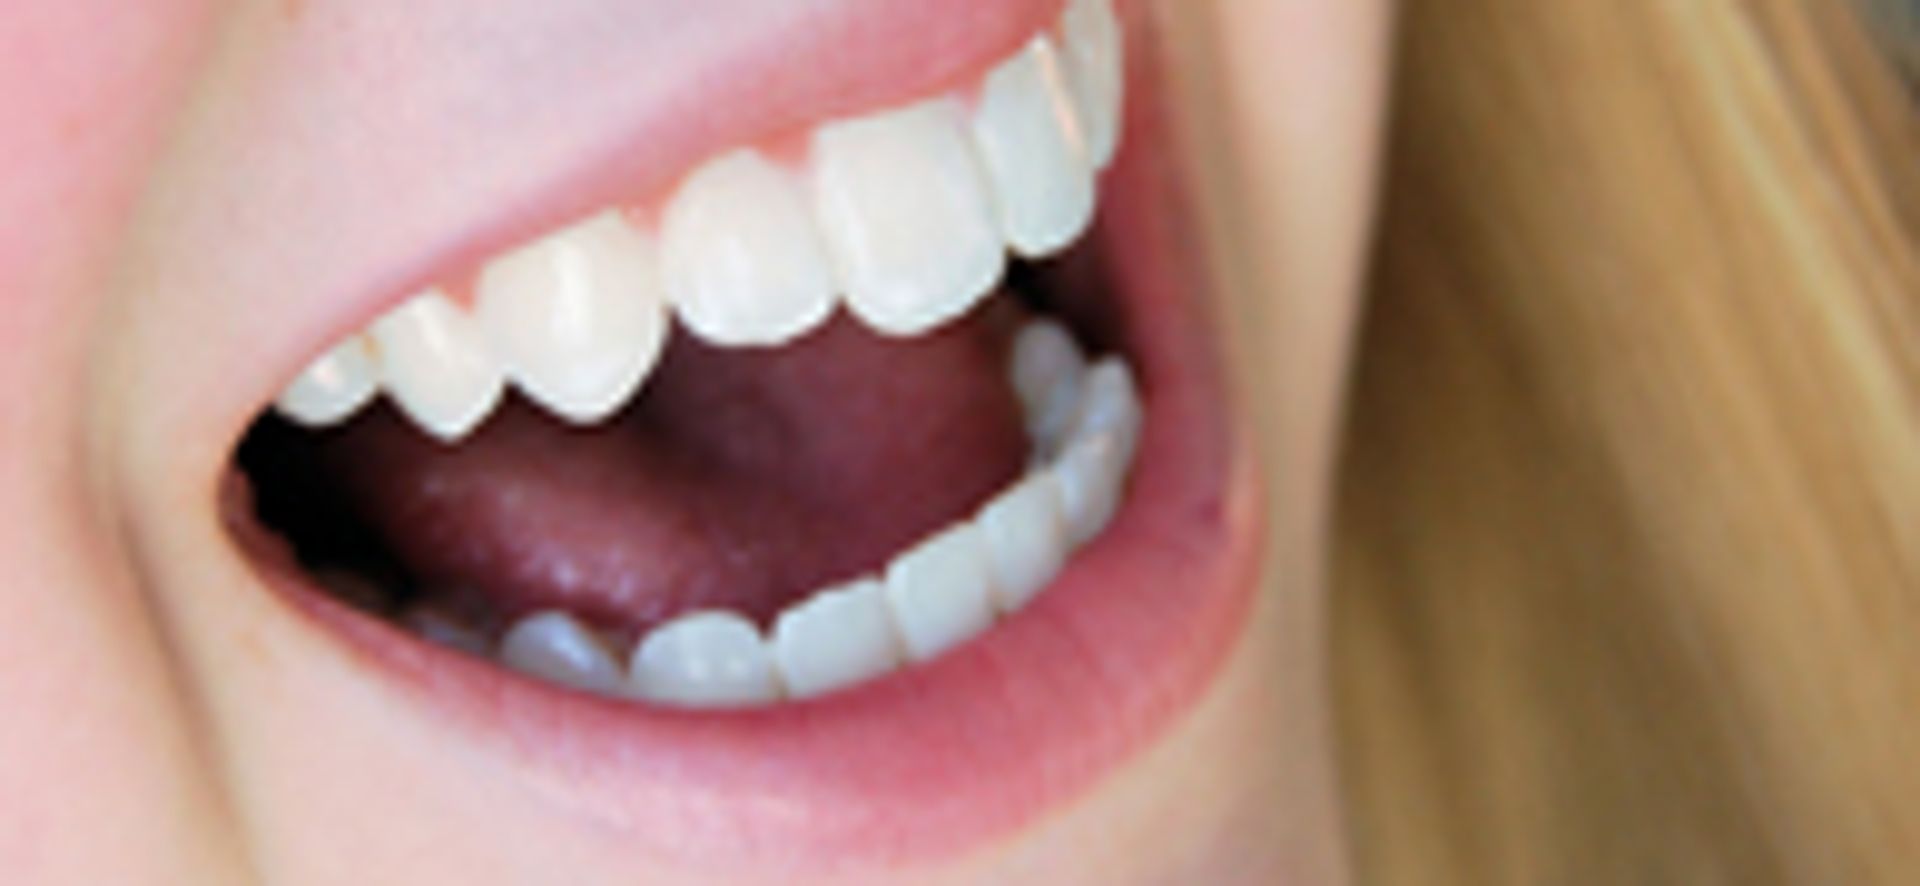 Verbinding Vermelding Analist Tanden bleken niet geheel zonder risico's - Kassa - BNNVARA